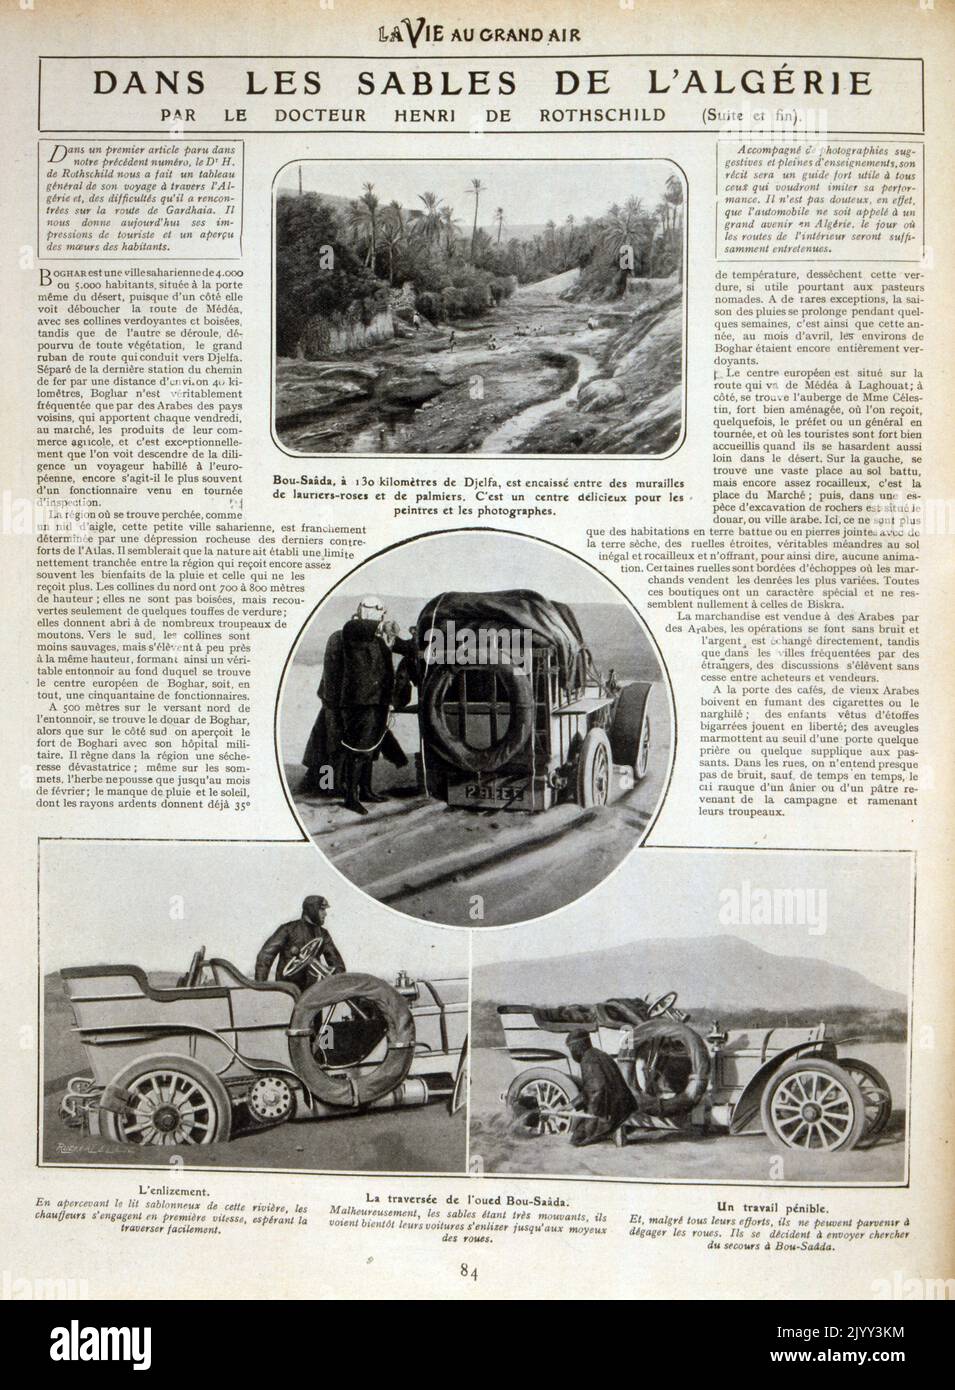 Französische Vintage-Fotos einer Auto-Rallye in der Sahara in Algerien 1905 Stockfoto